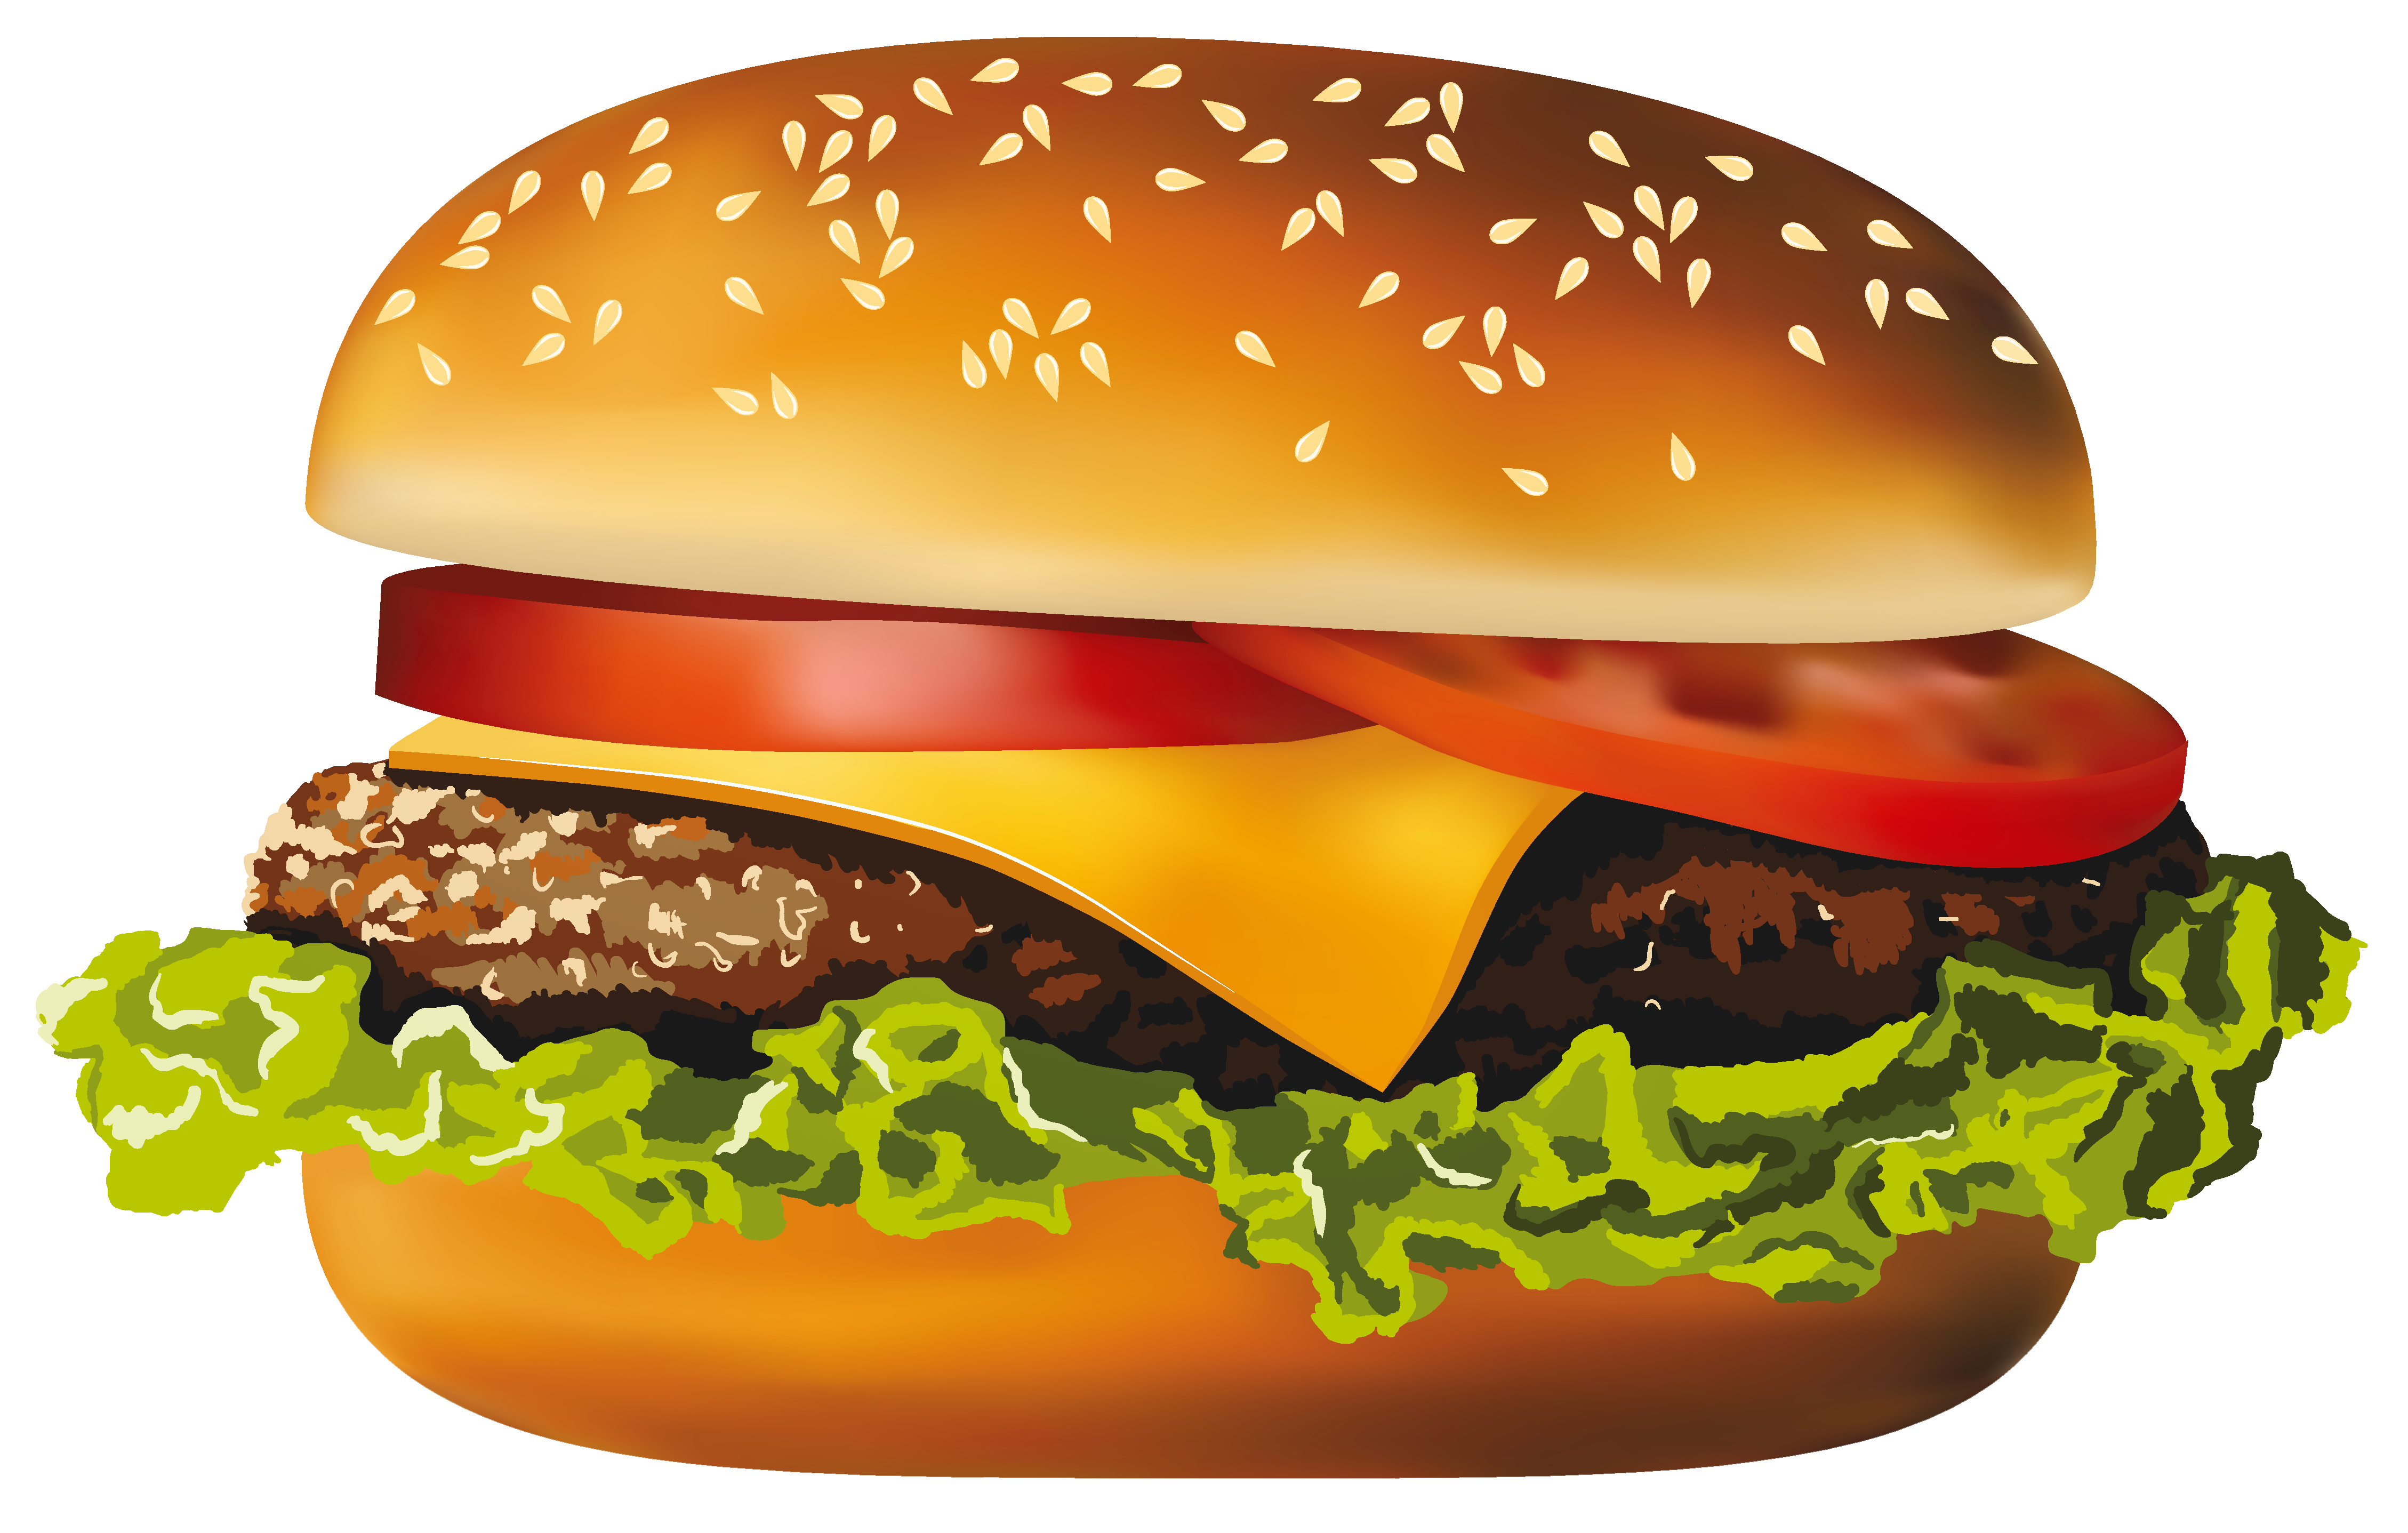 Clipart - Hamburger